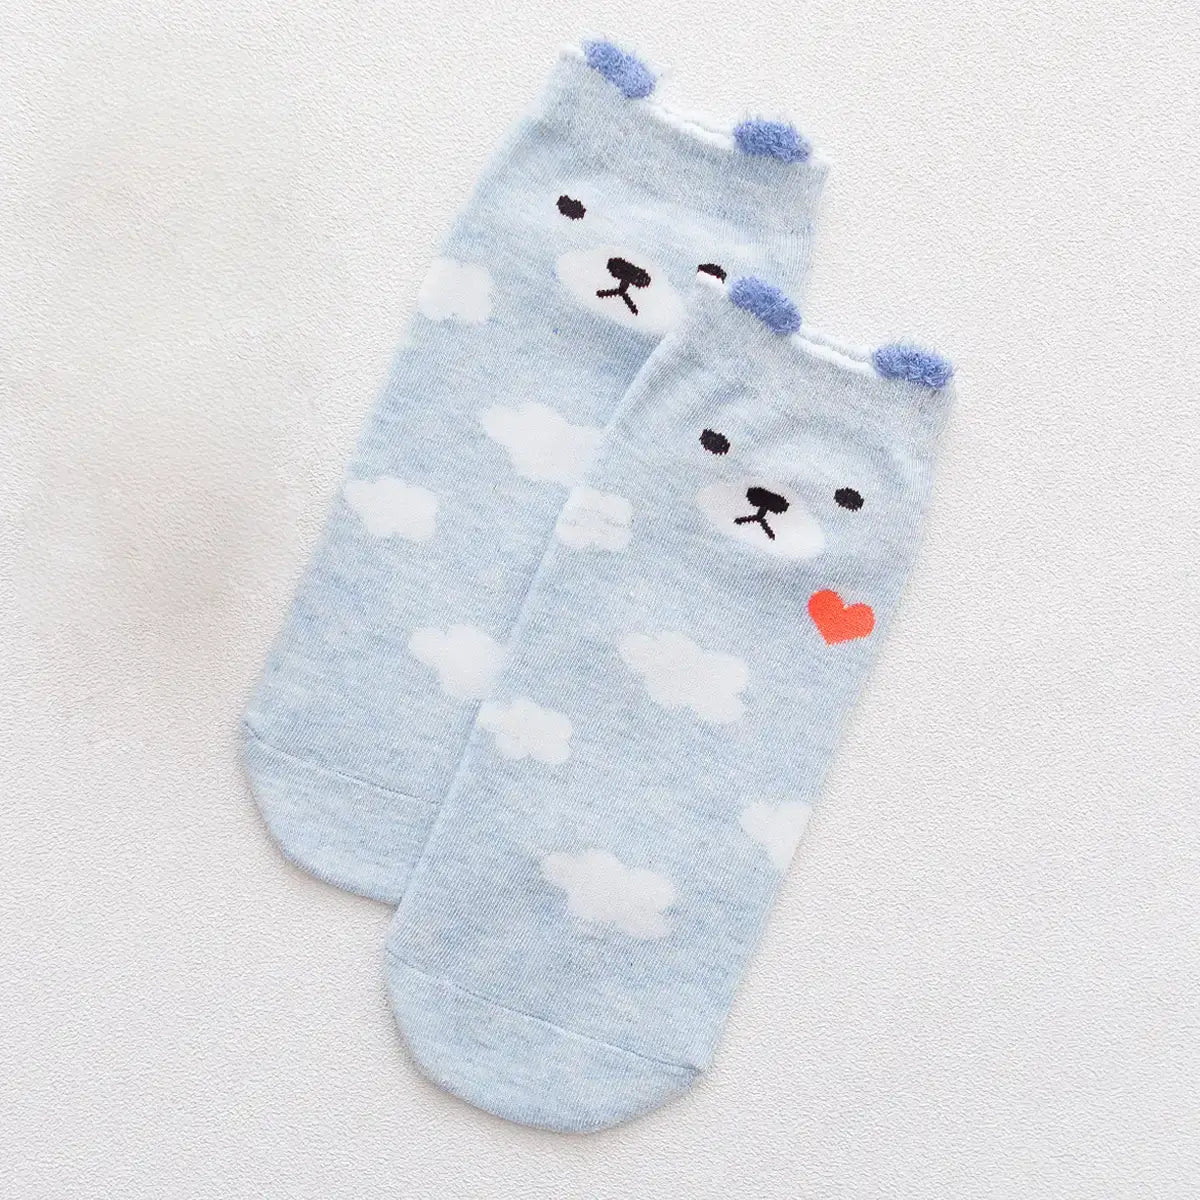 Chaussettes bleu longues en coton avec des petites oreilles et représentant un ours | Chaussettes confortables et élégantes | Idéales pour tous | Disponibles en plusieurs couleurs